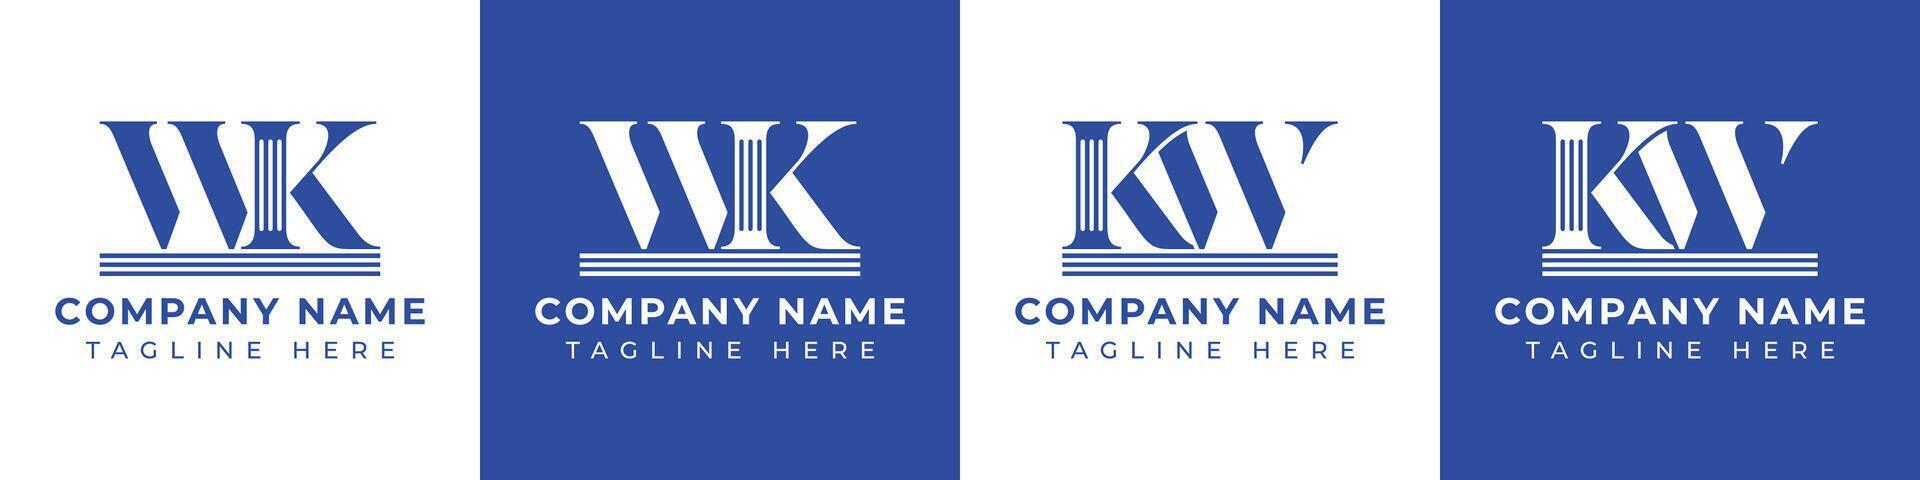 brev wk och kw pelare logotyp uppsättning, lämplig för företag med wk och kw relaterad till pelare vektor